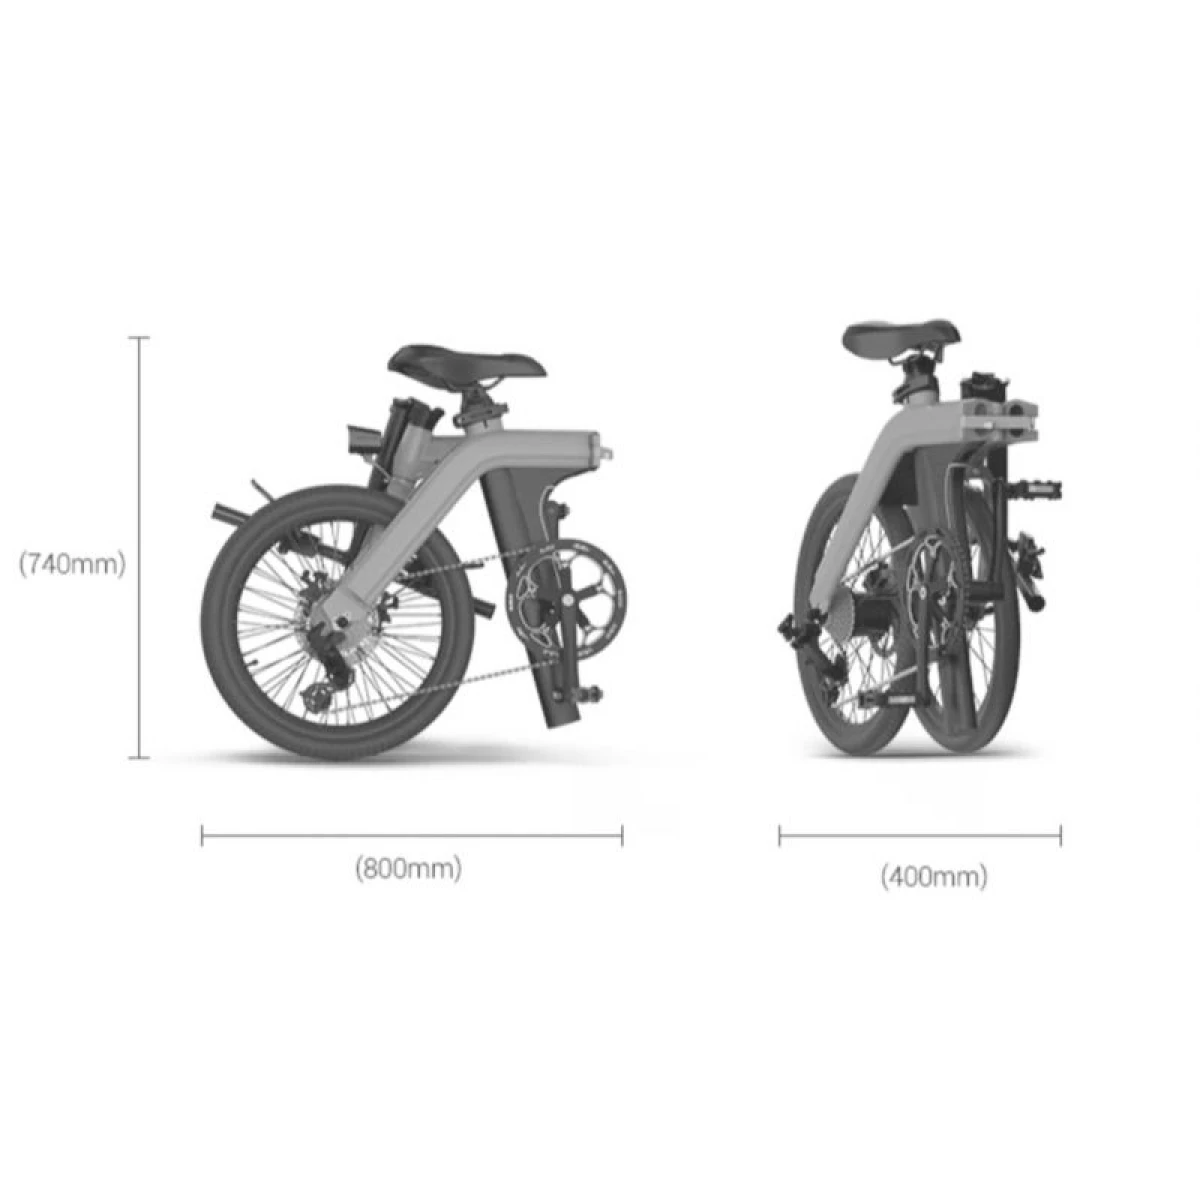 Die Abmessungen des faltbaren E-Bikes von TWHEELS im gefaltet Zustand: 80 cm x 74 cm.